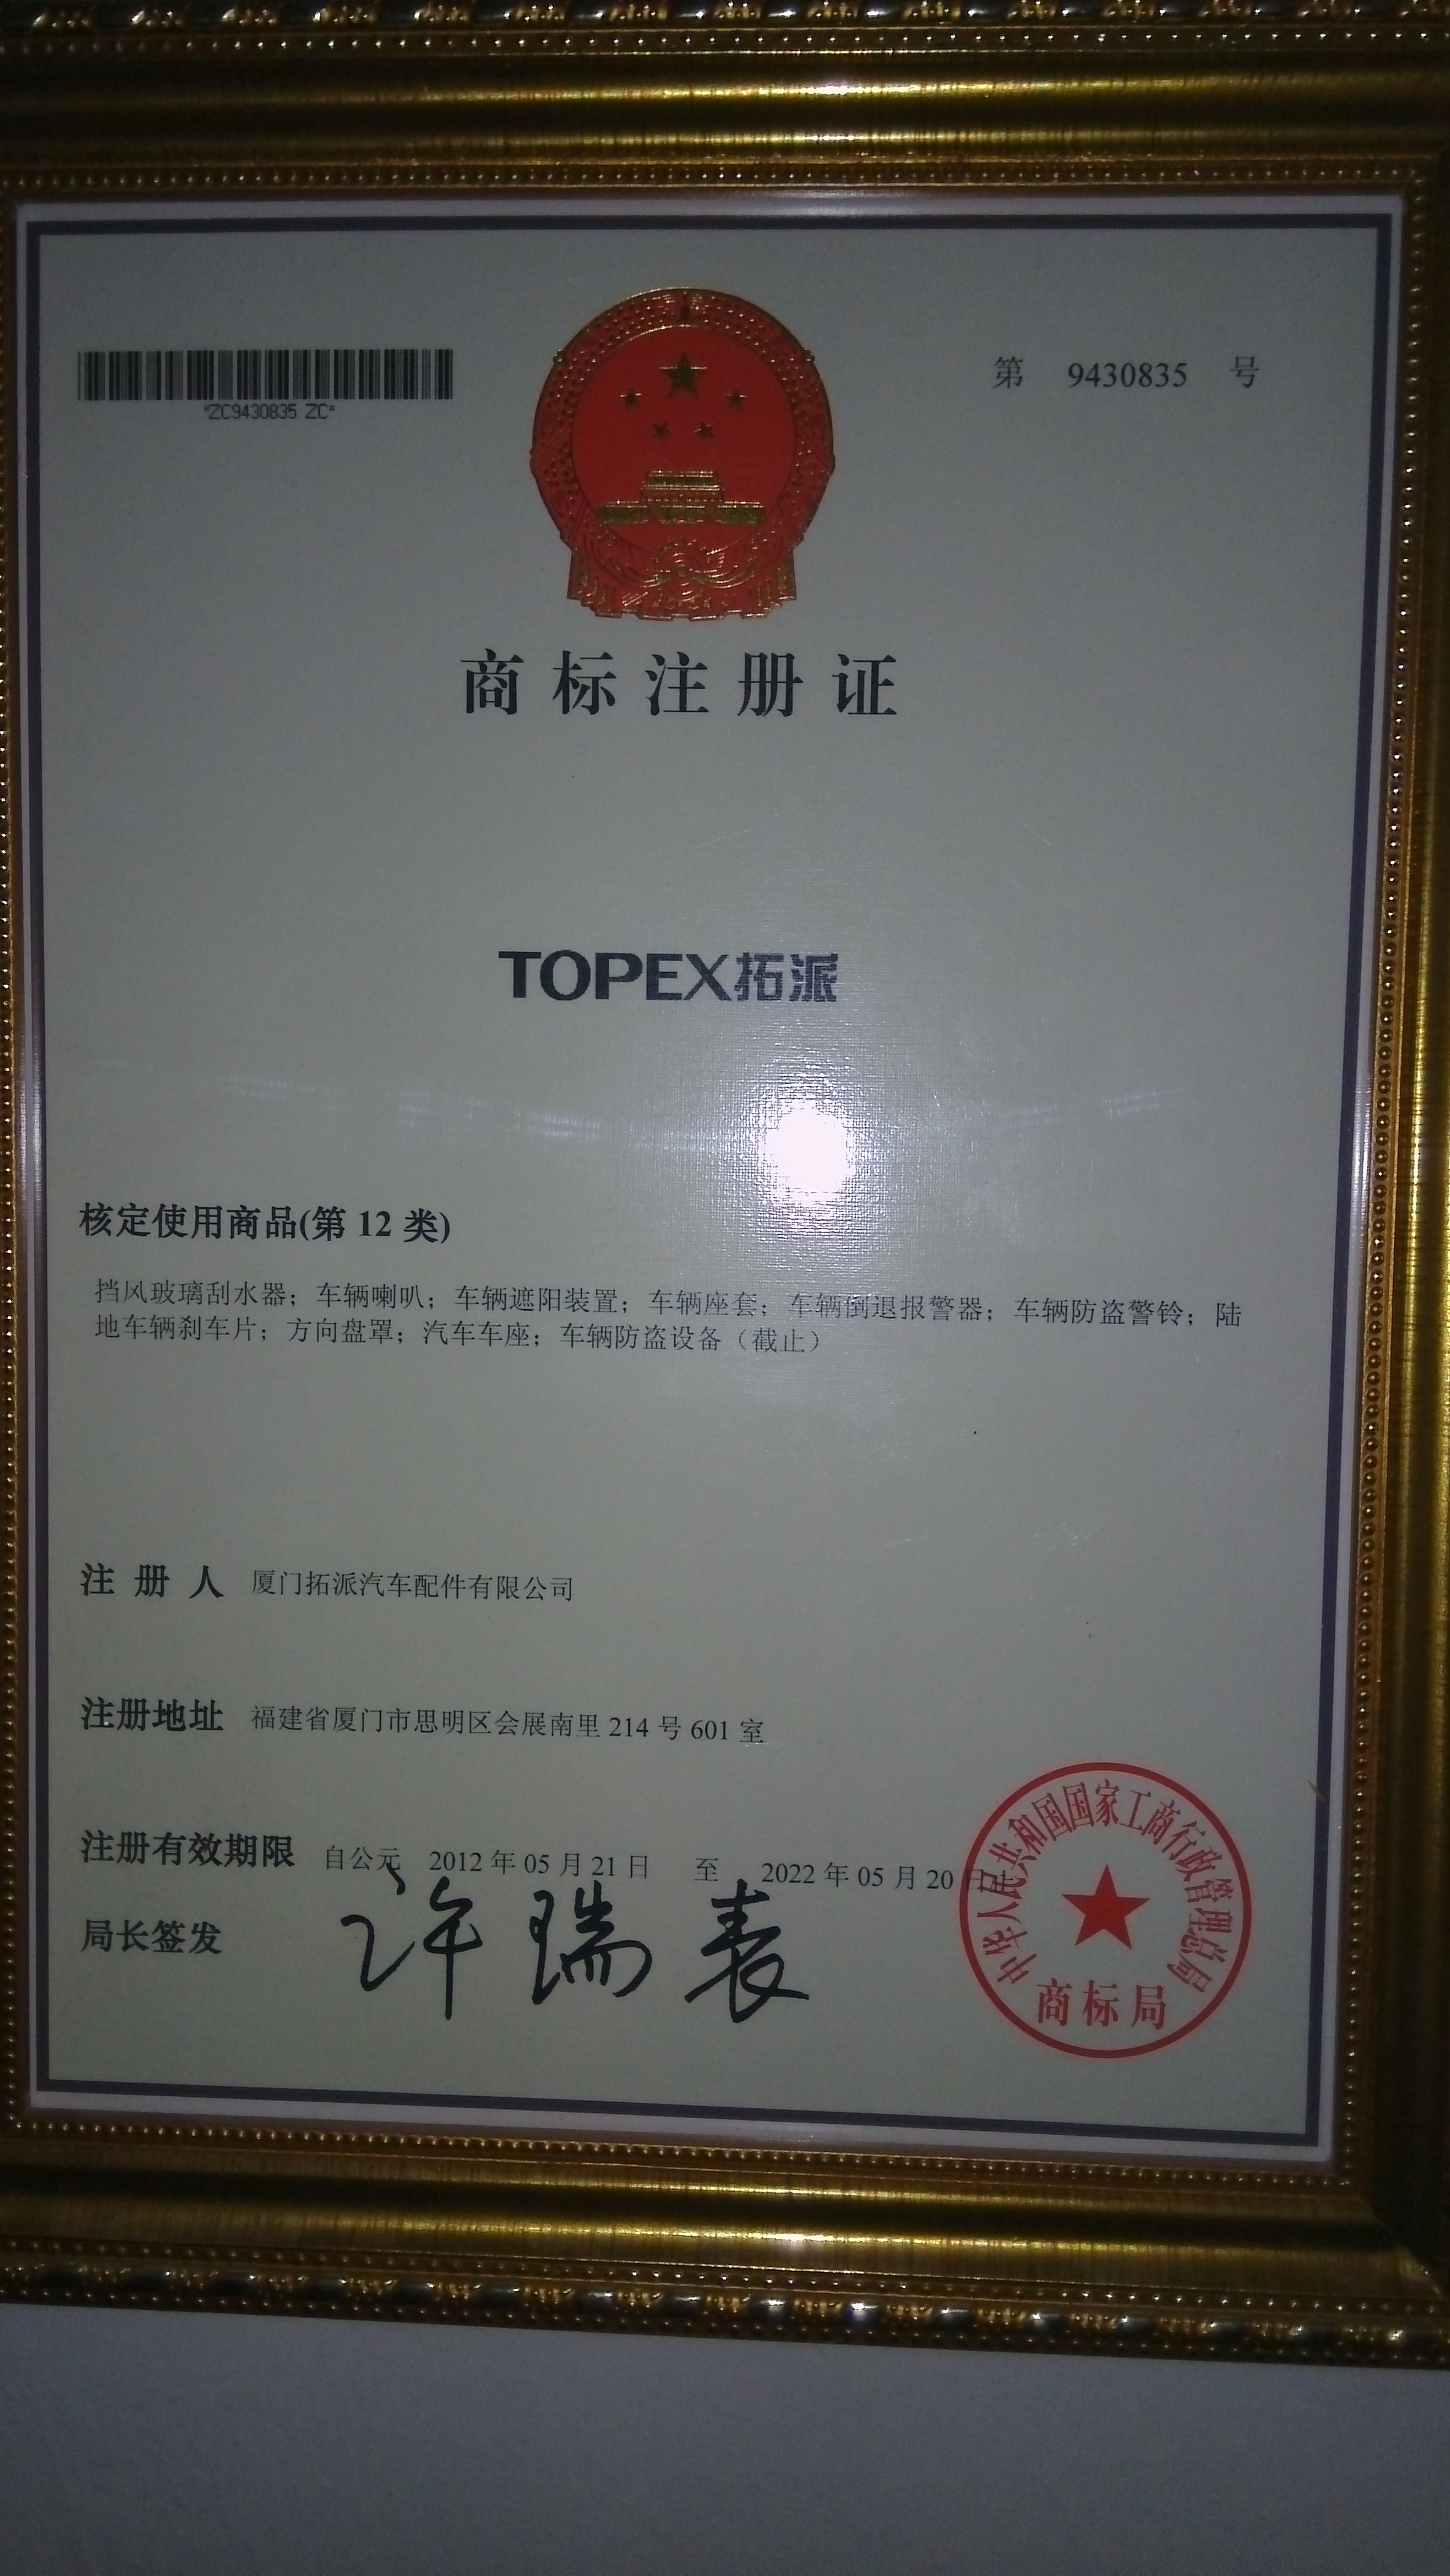 意奔玛被评为中华汽配行业十大滤清器品牌